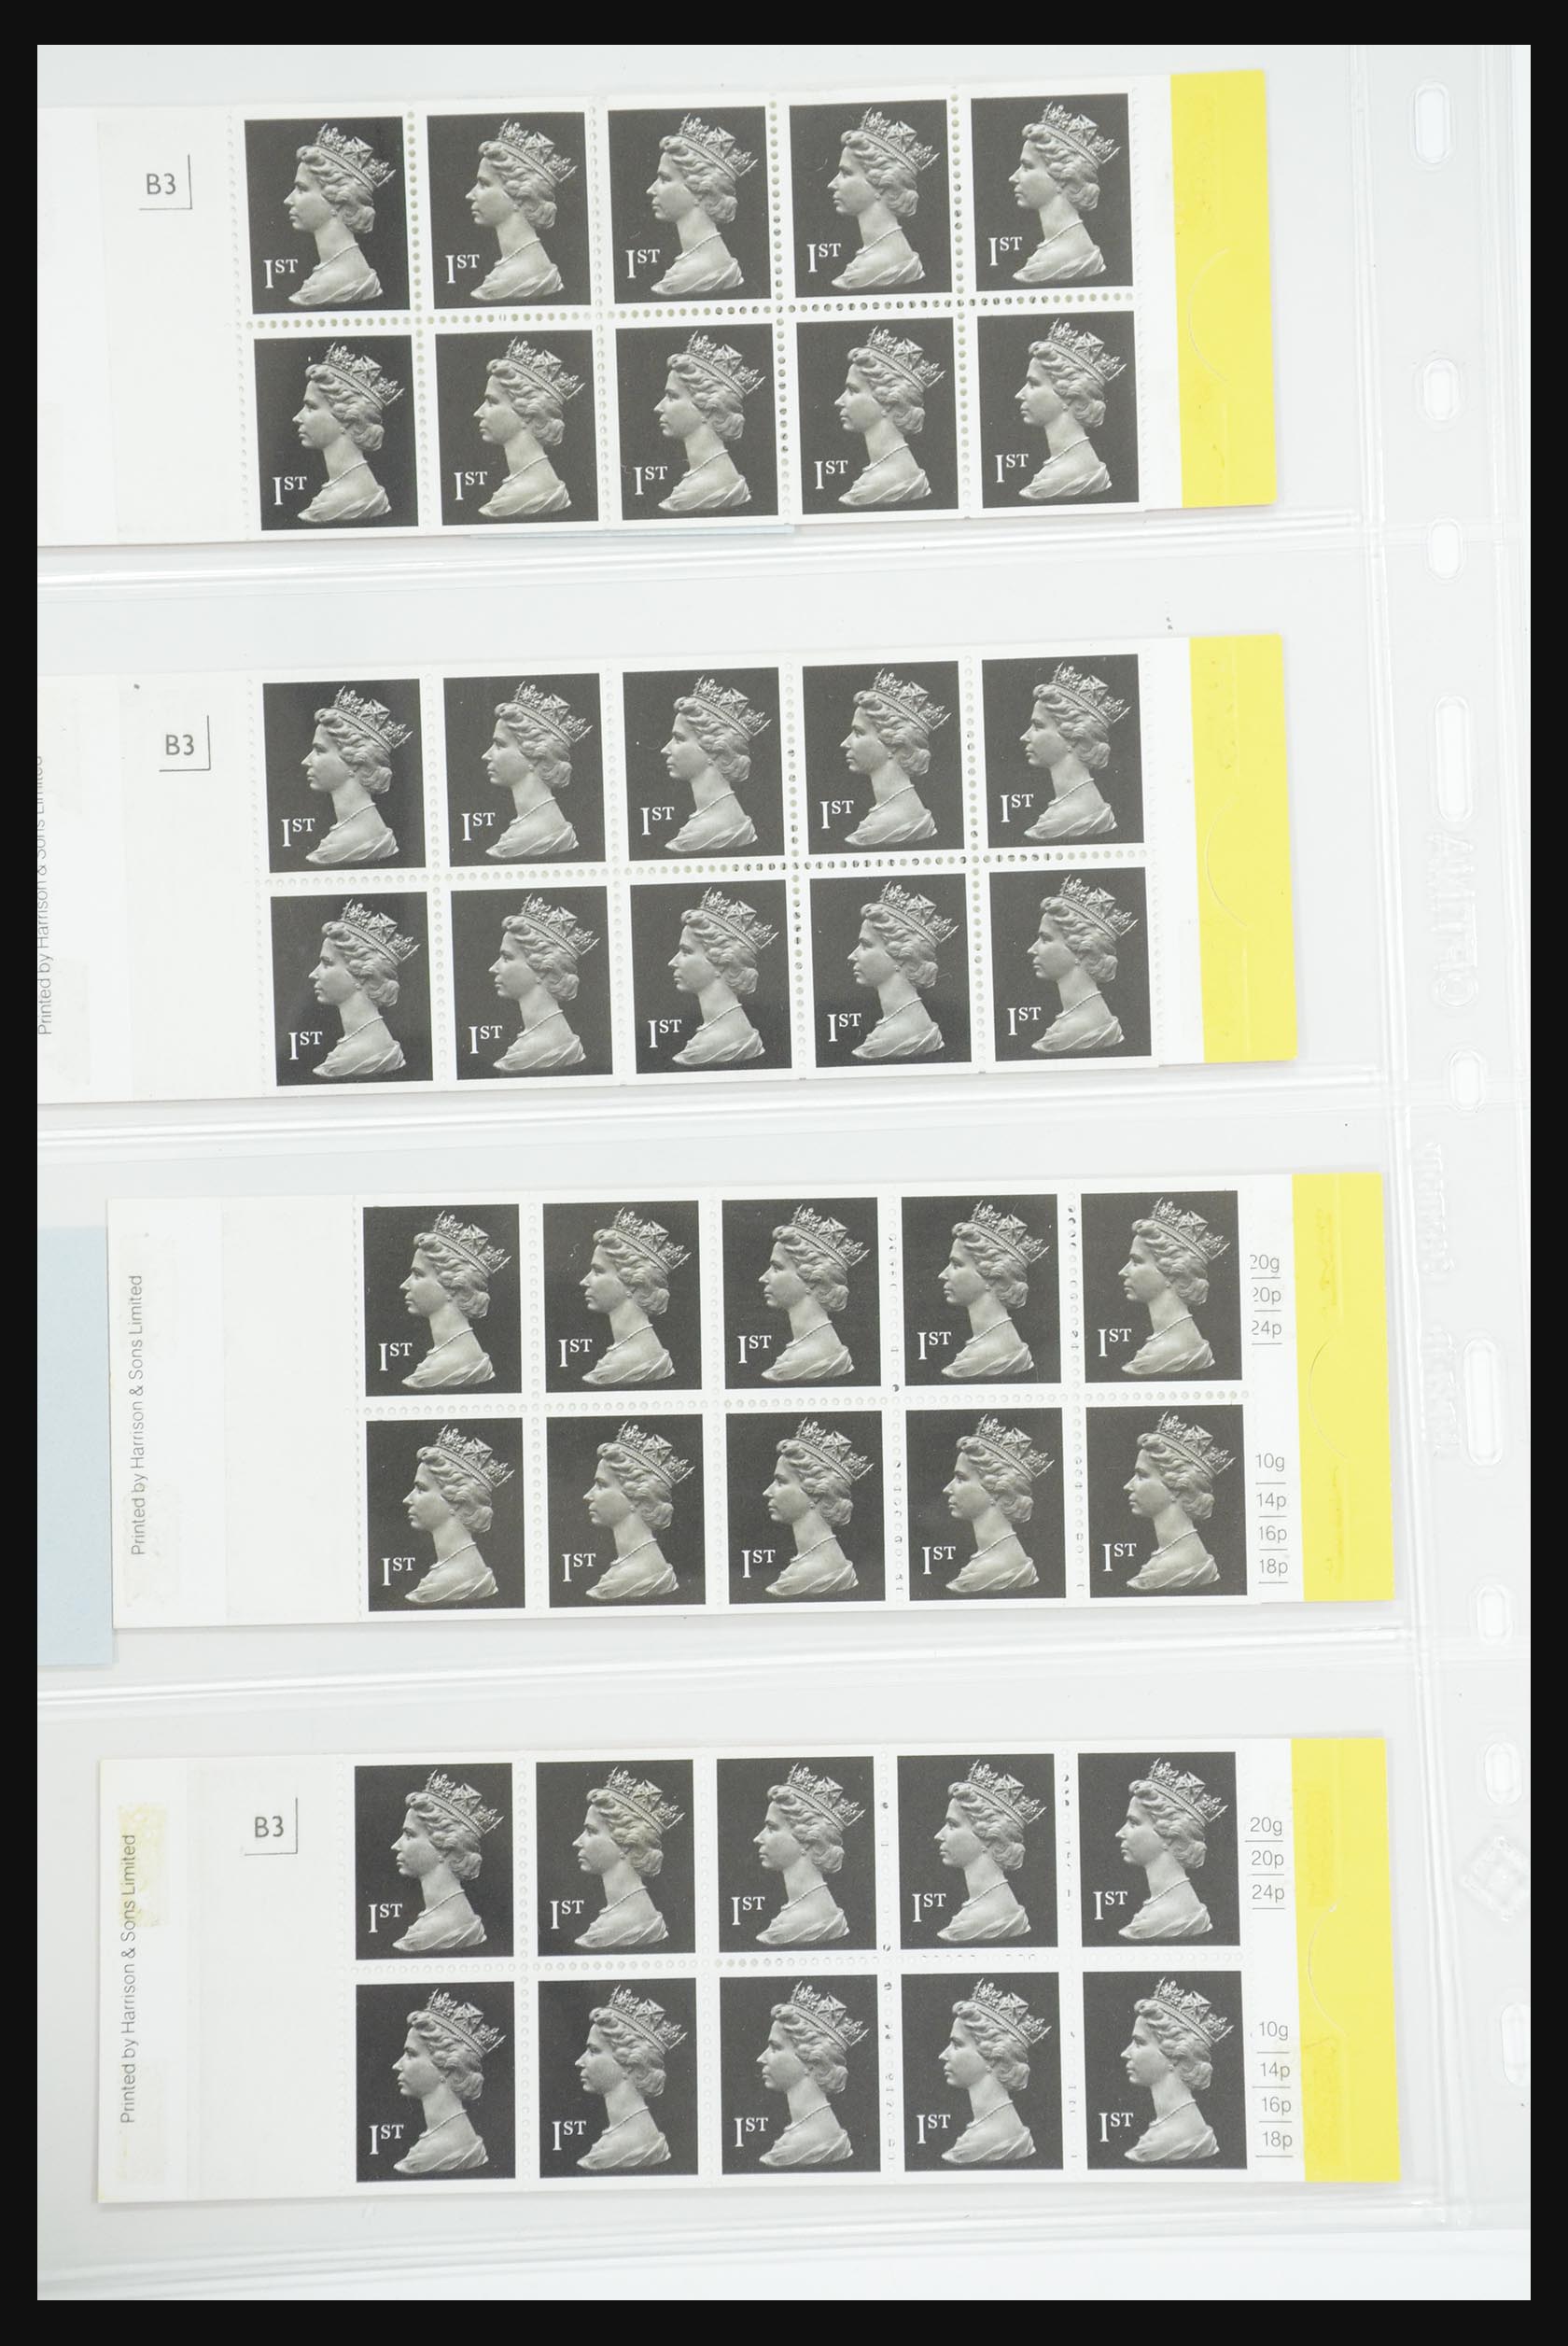 31960 094 - 31960 Engeland postzegelboekjes 1989-2000.